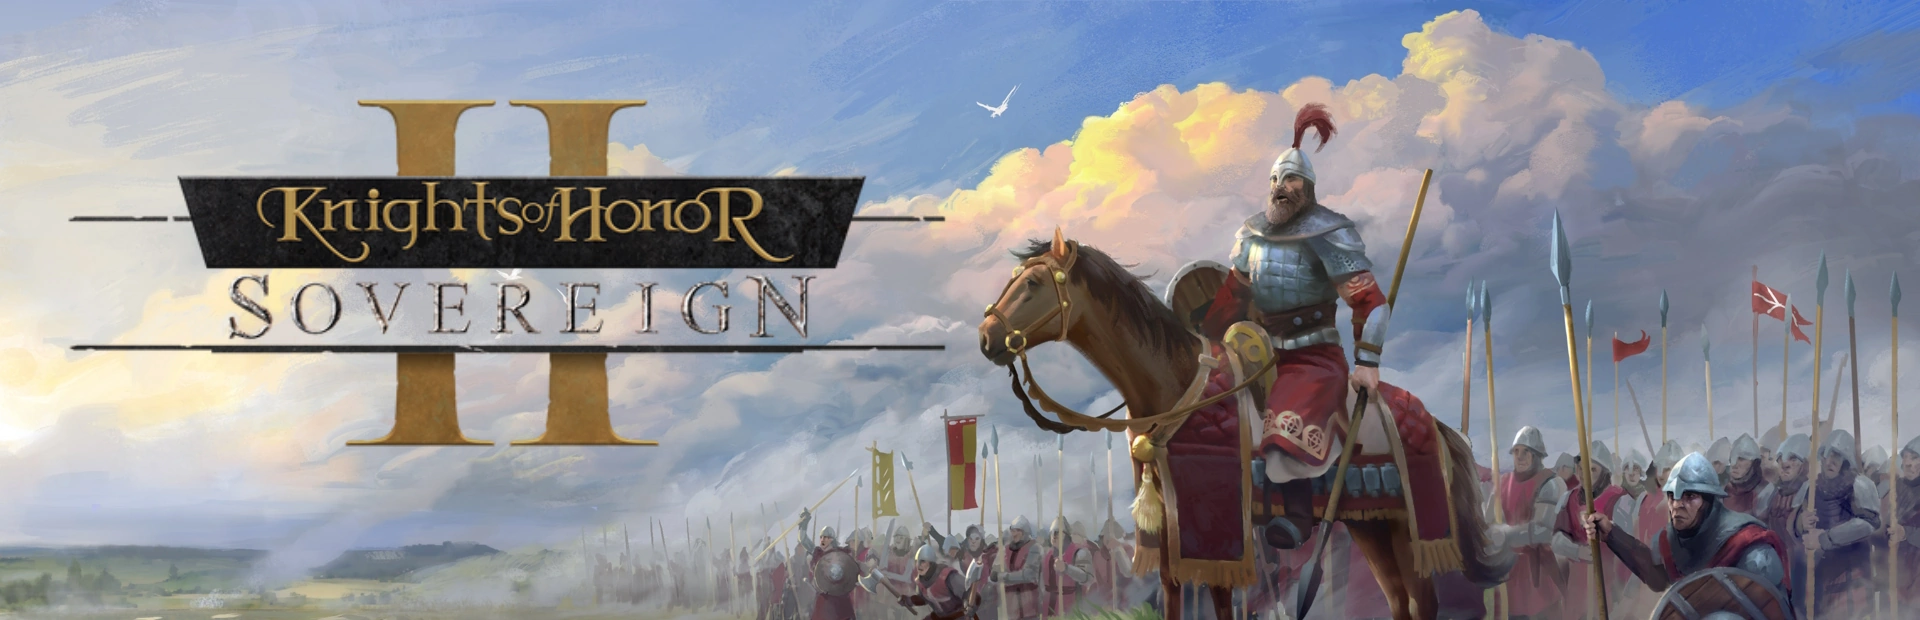  دانلود بازی Knights of Honor II: Sovereign | گیمباتو